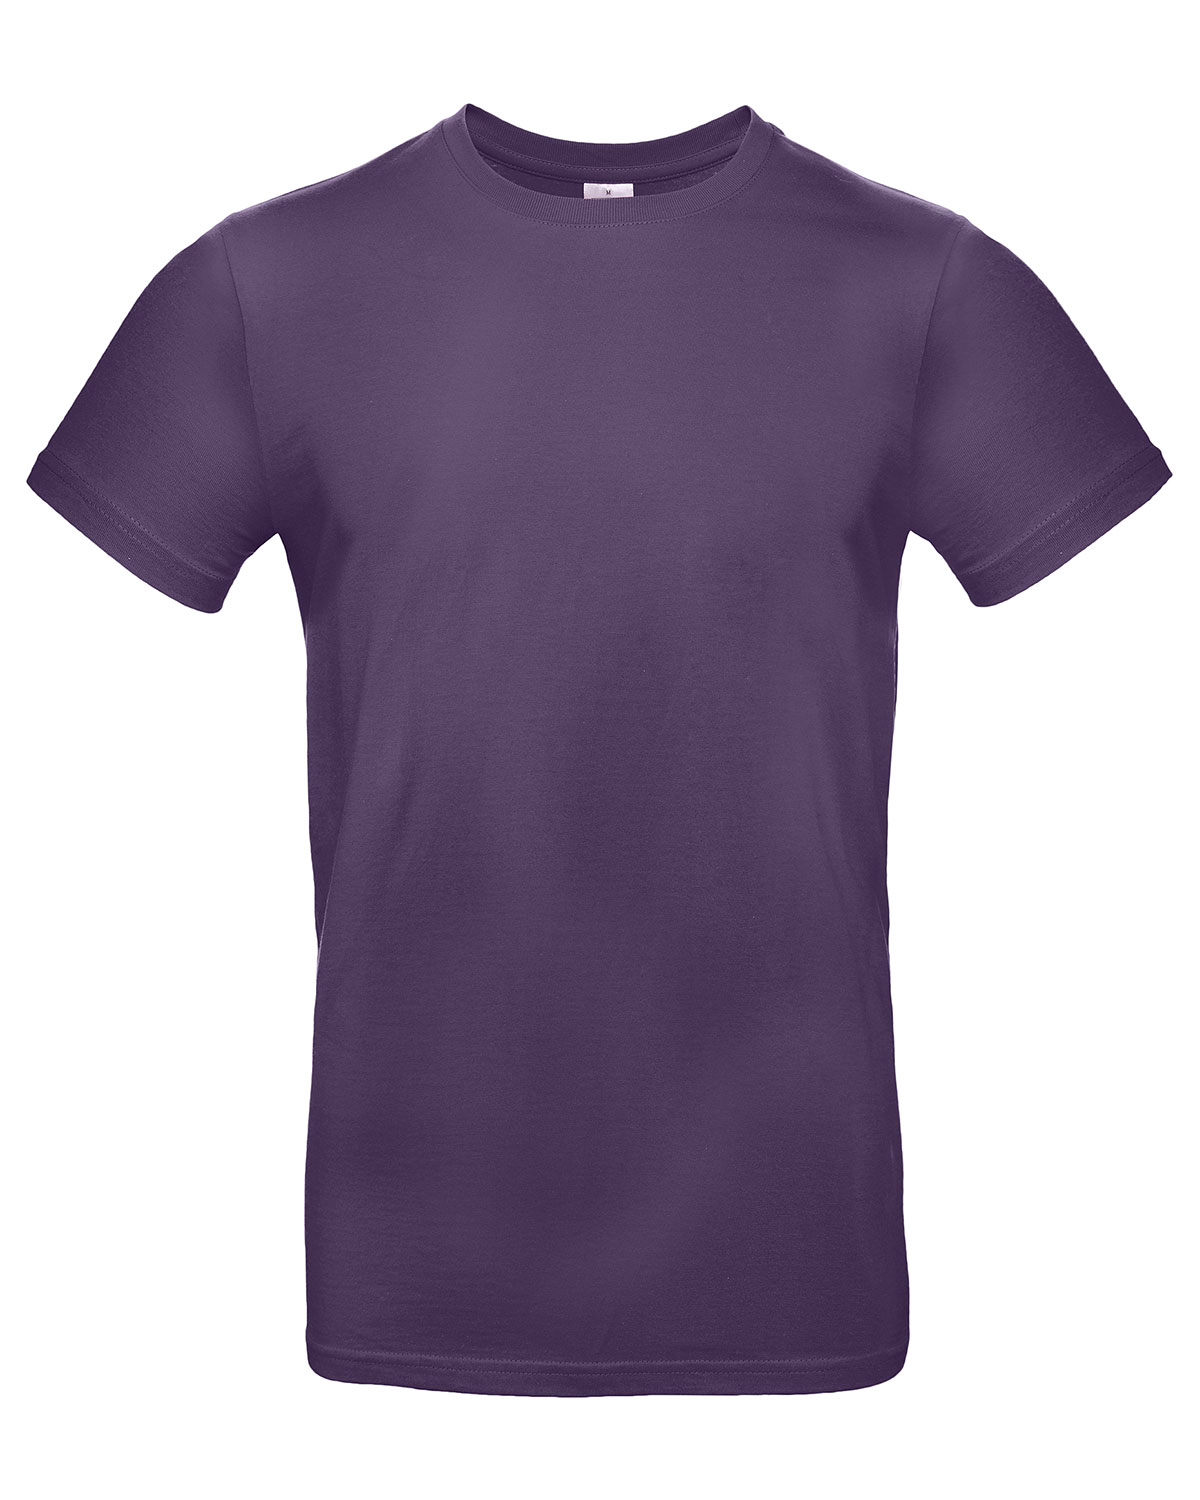 T-Shirt #E190 Urban Purple 3XL